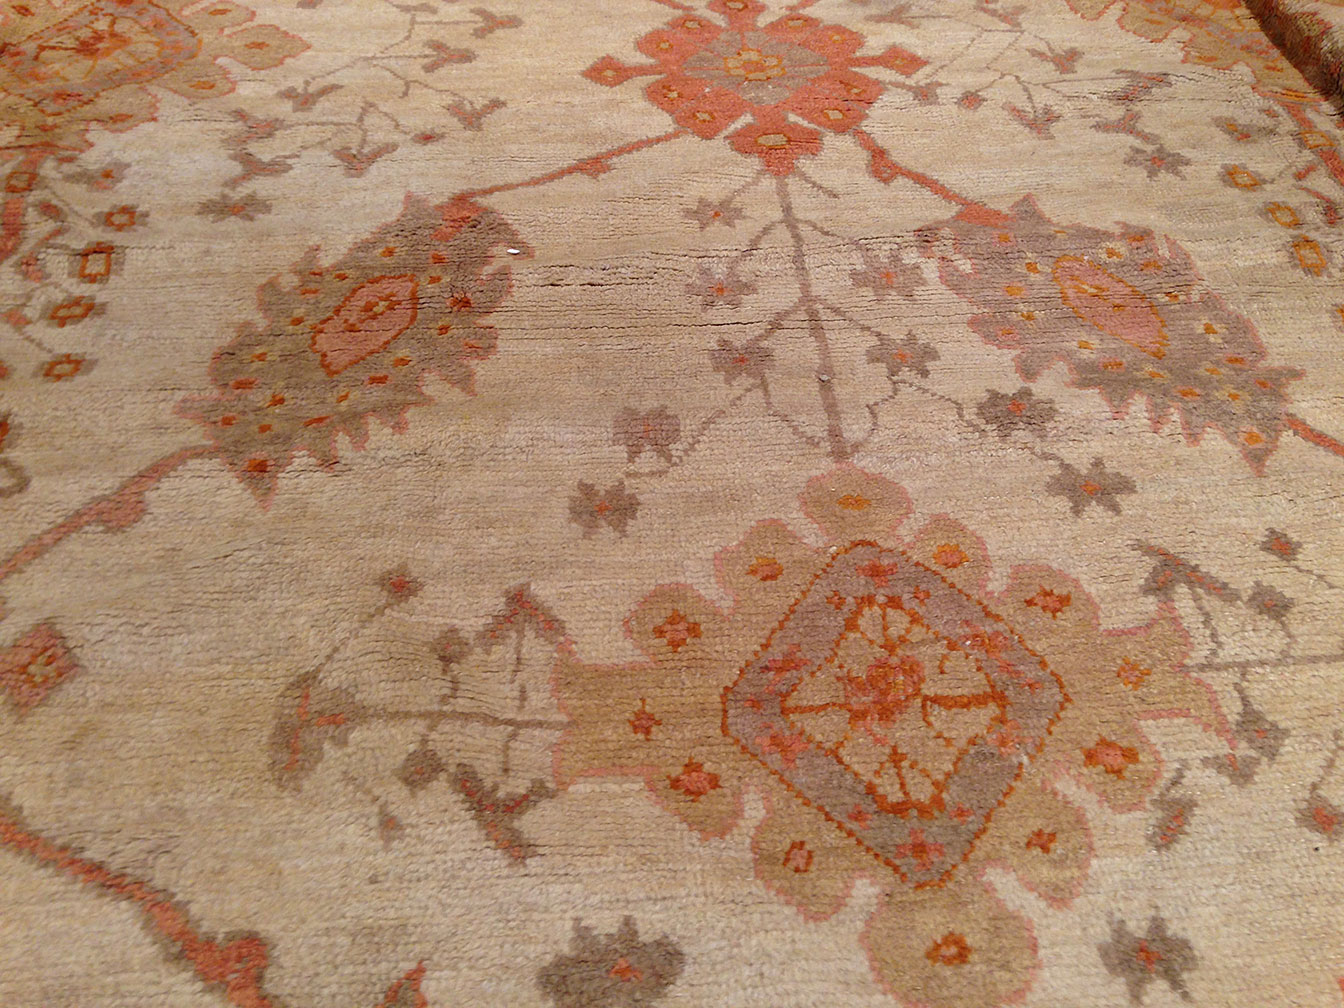 Antique oushak Carpet - # 50090